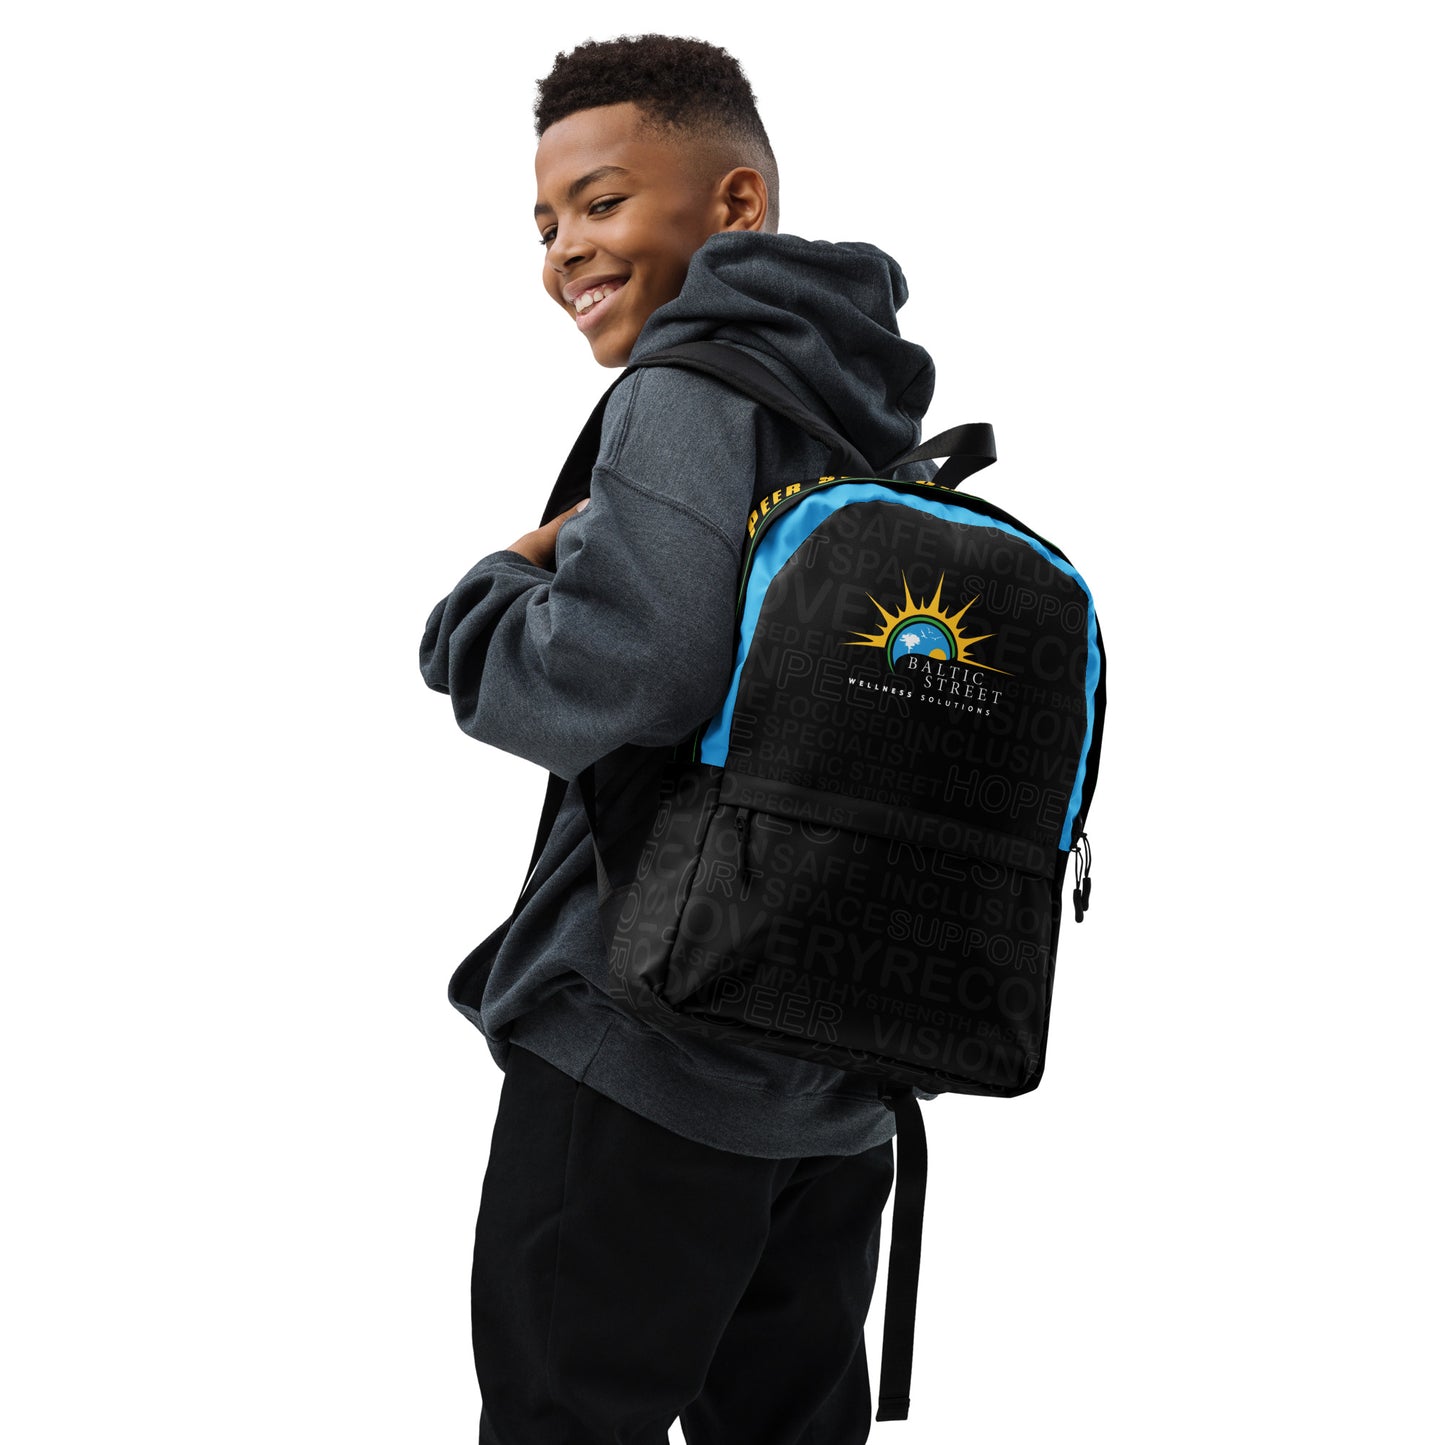 Baltic Rebranded Backpack